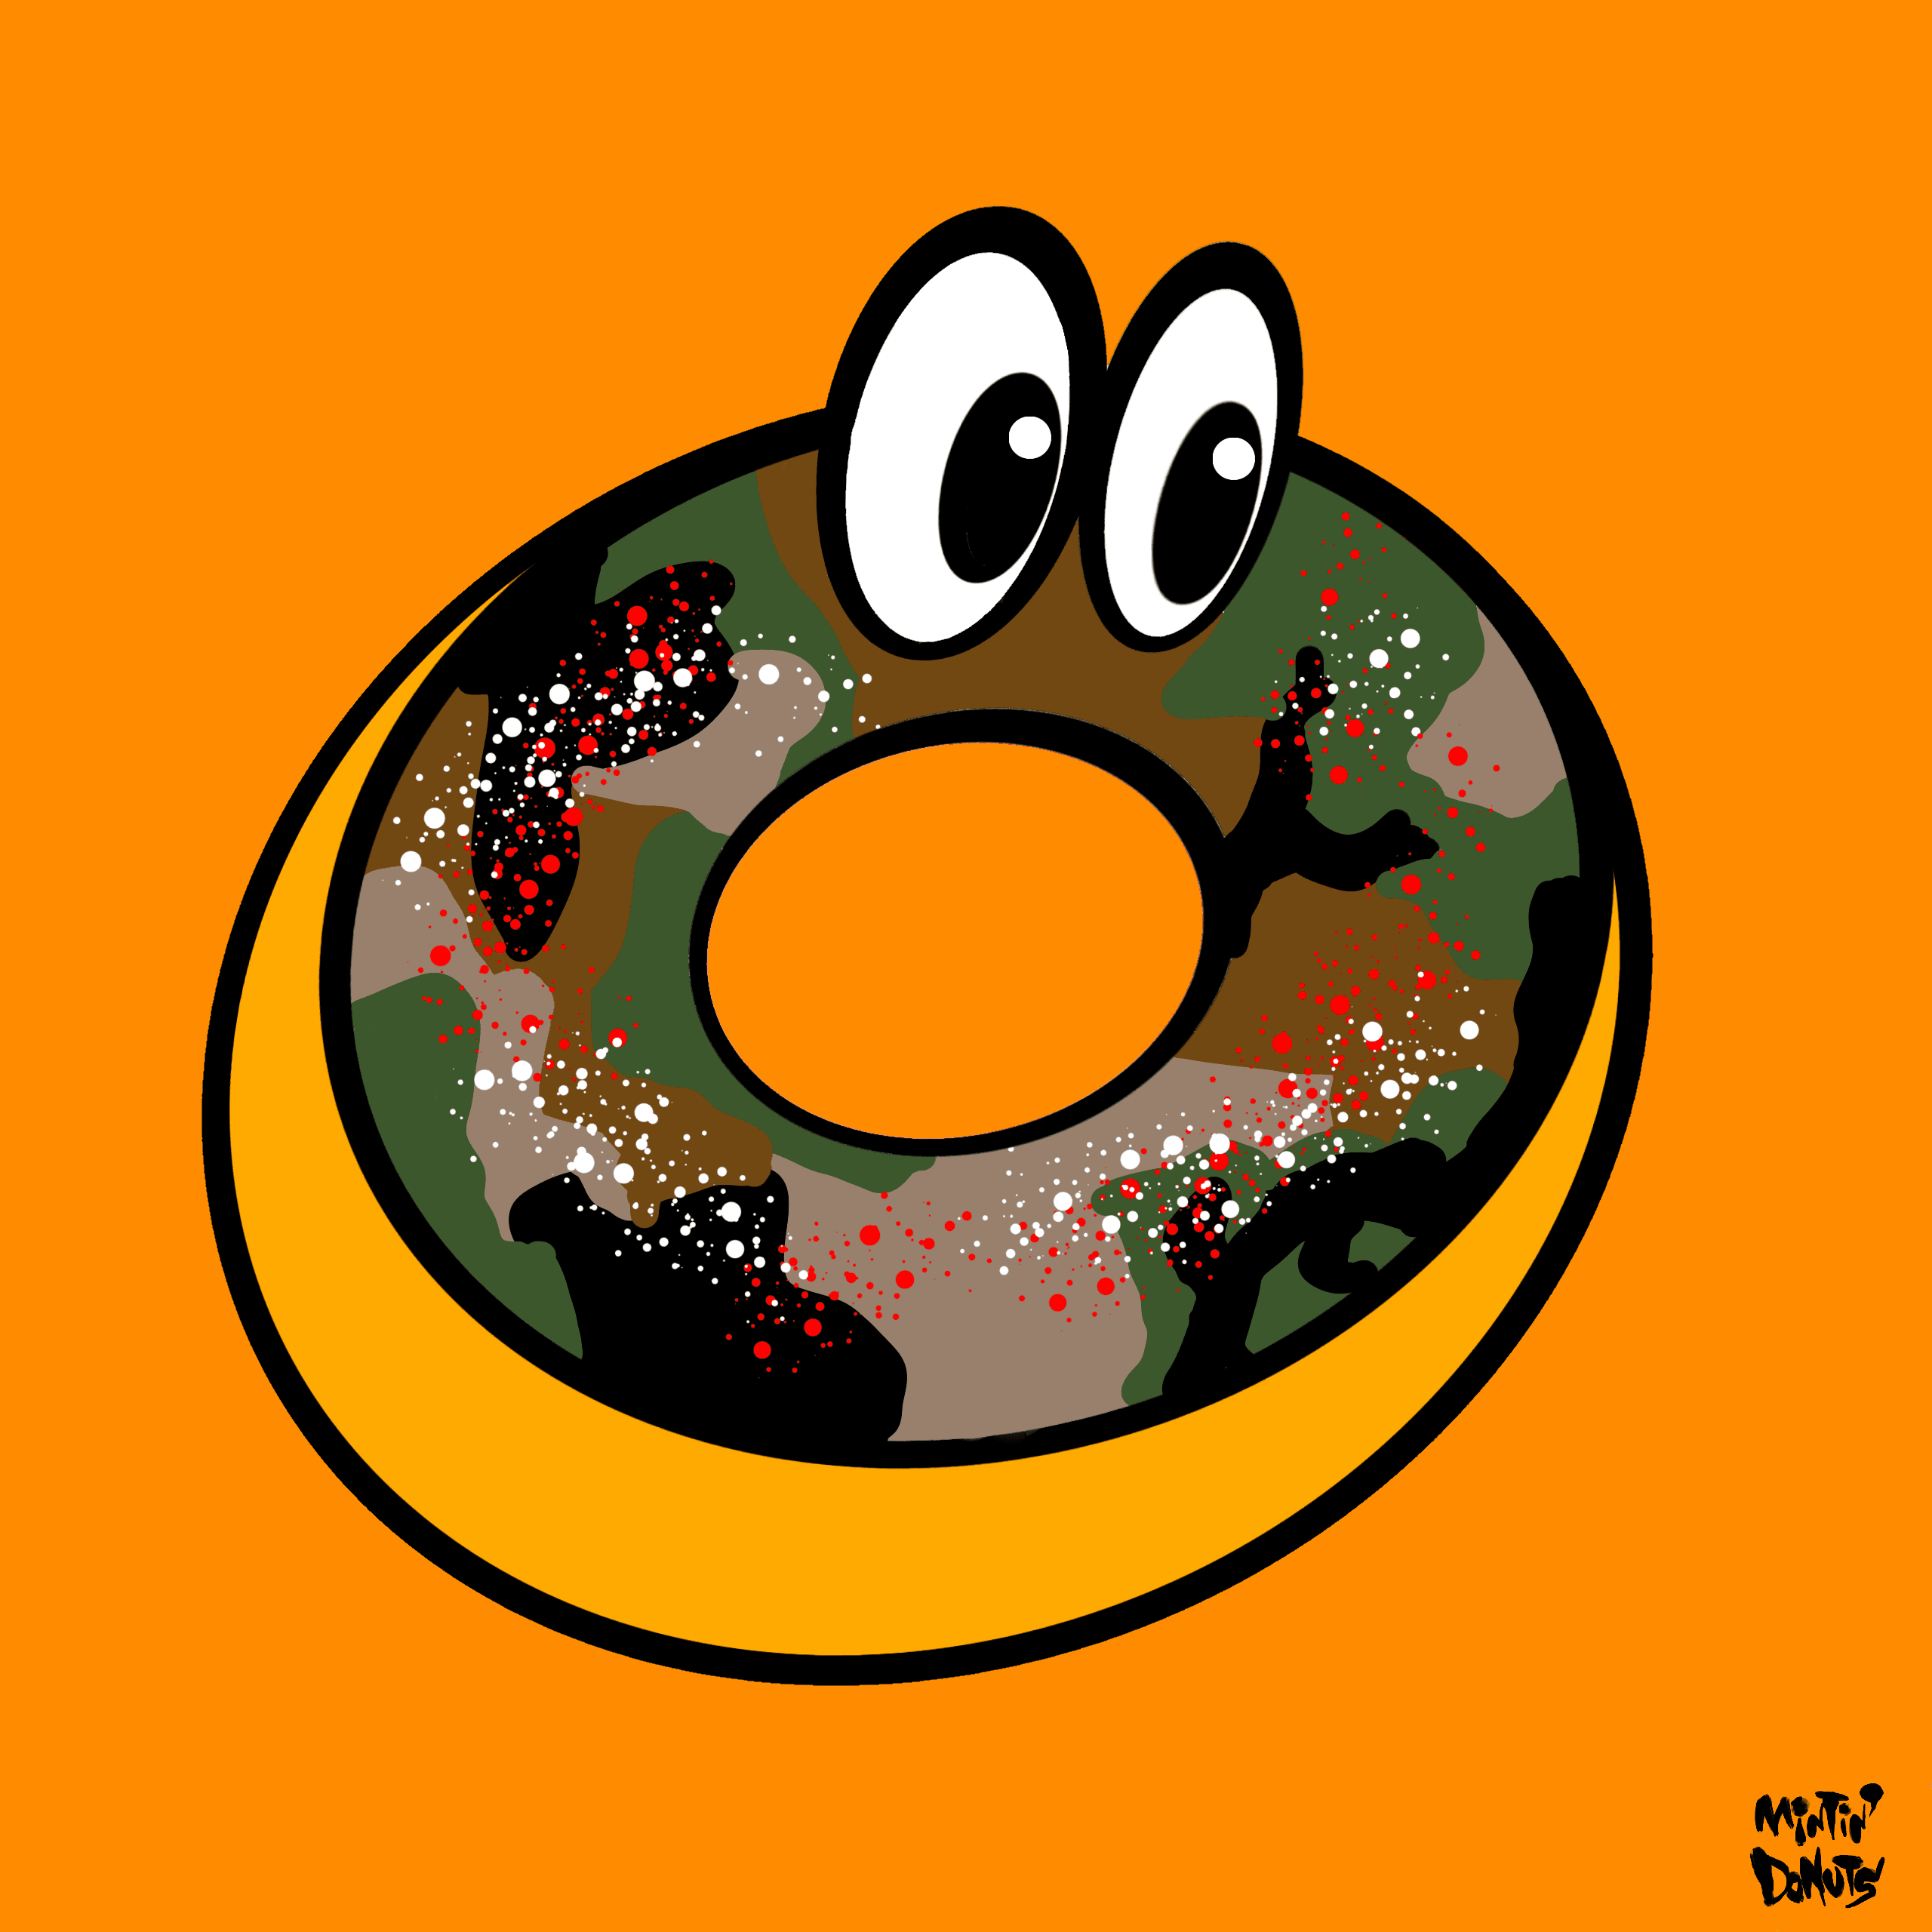 Mintin' Donuts #031 